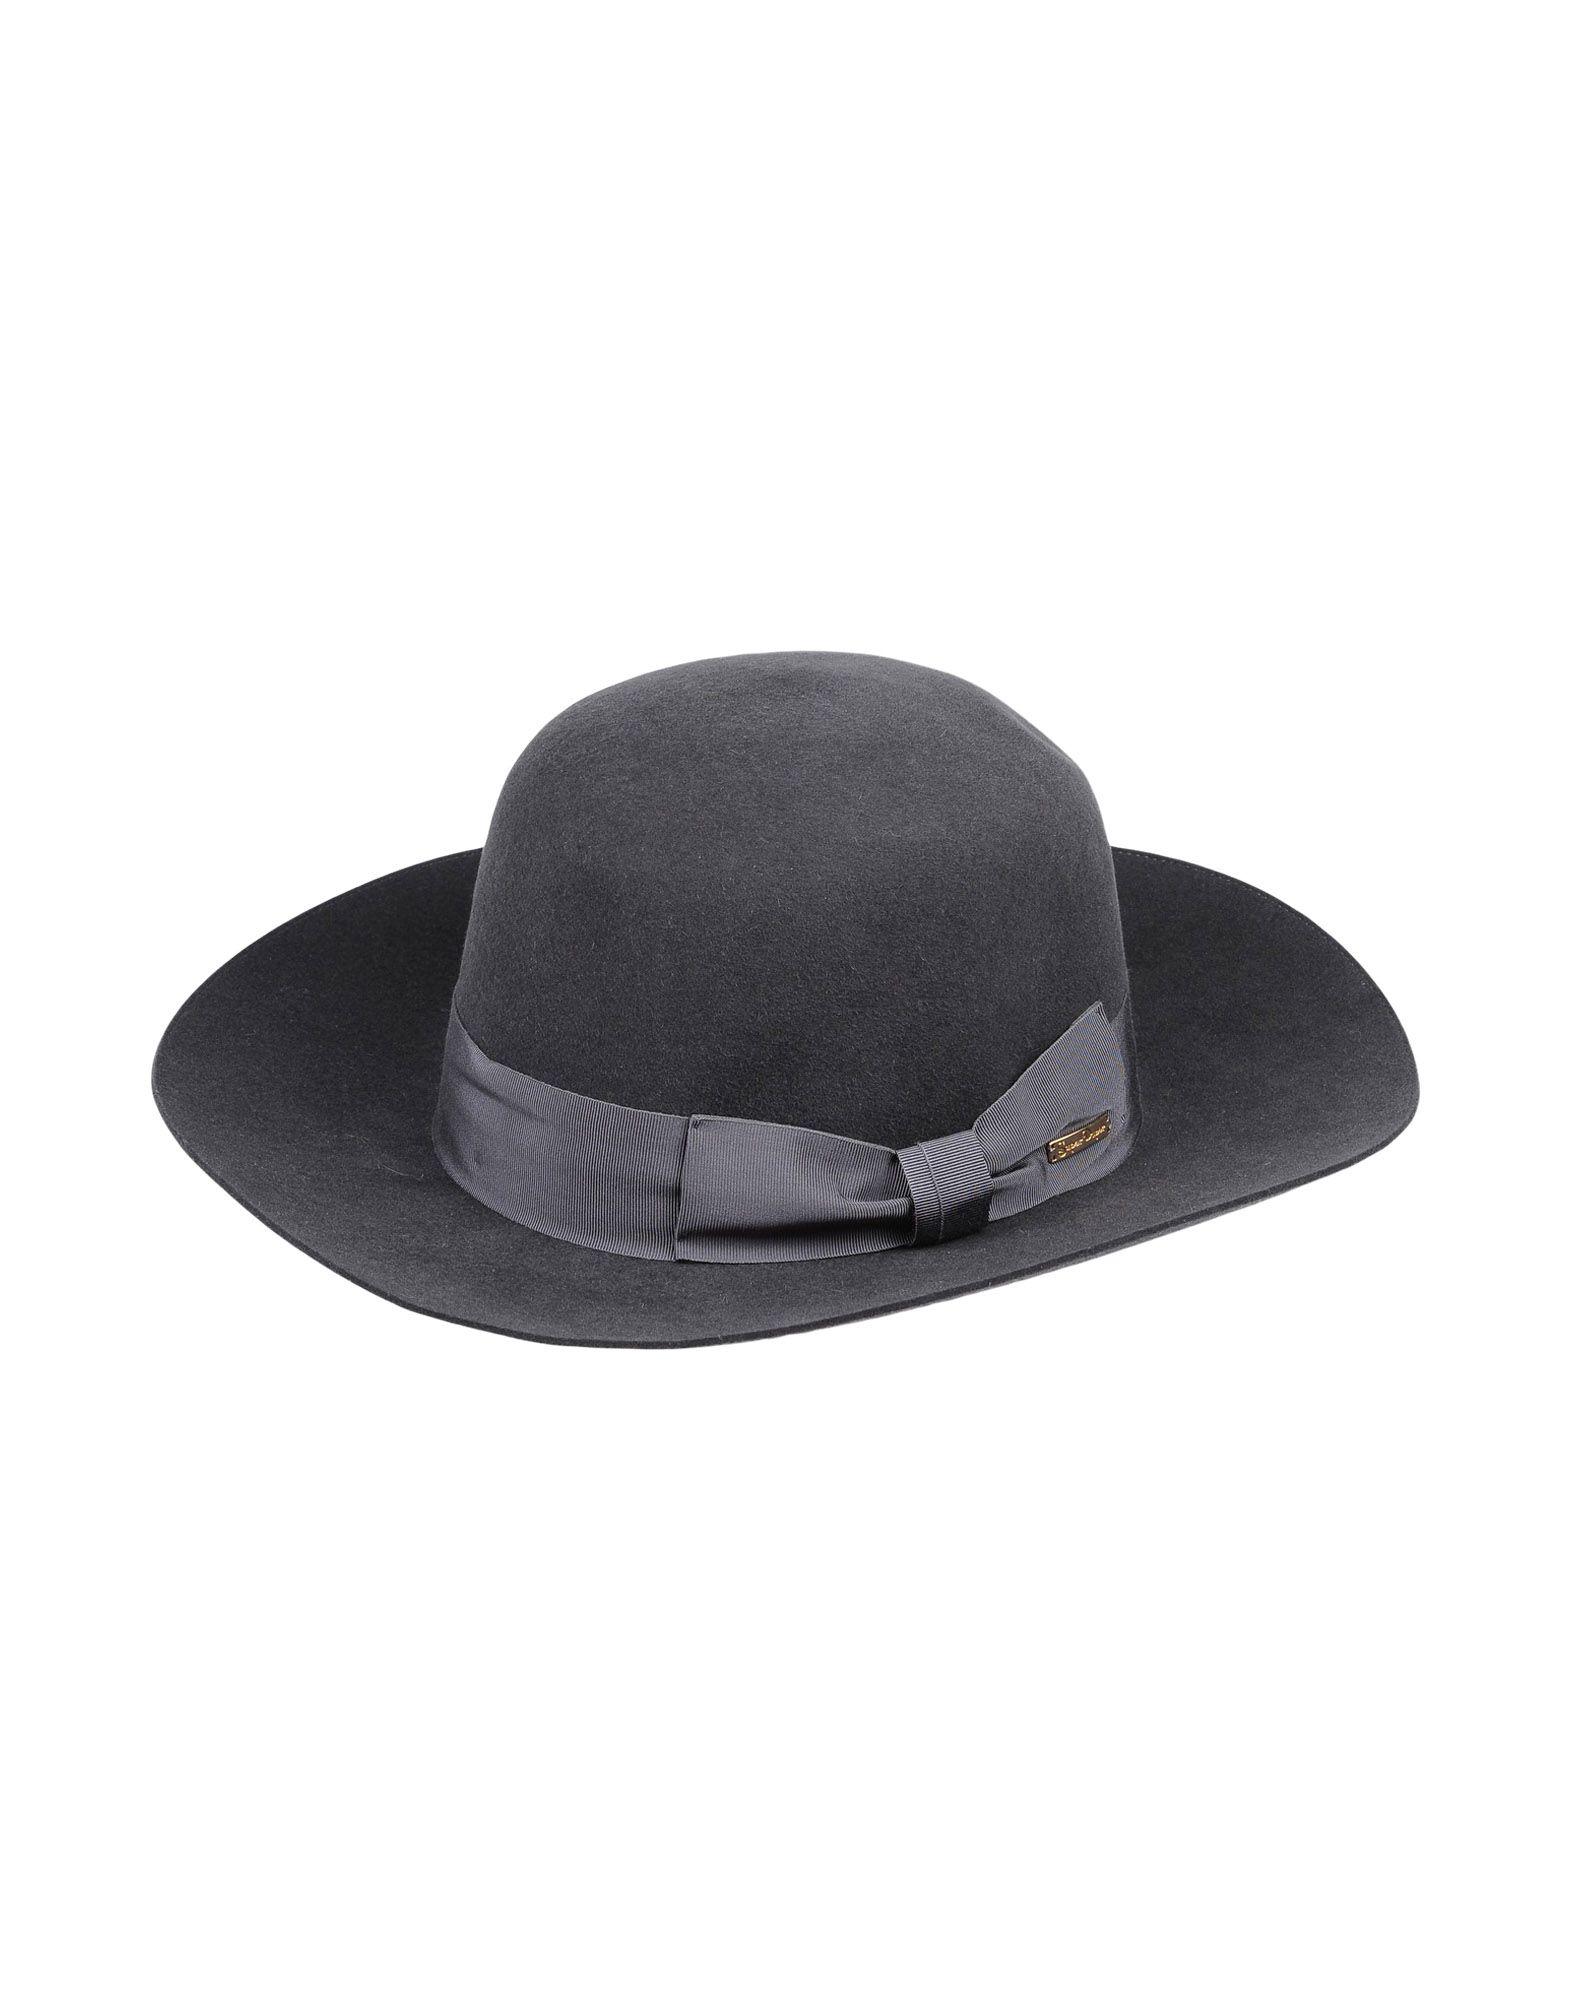 SUPER DUPER HATS レディース 帽子 鉛色 56 紡績繊維